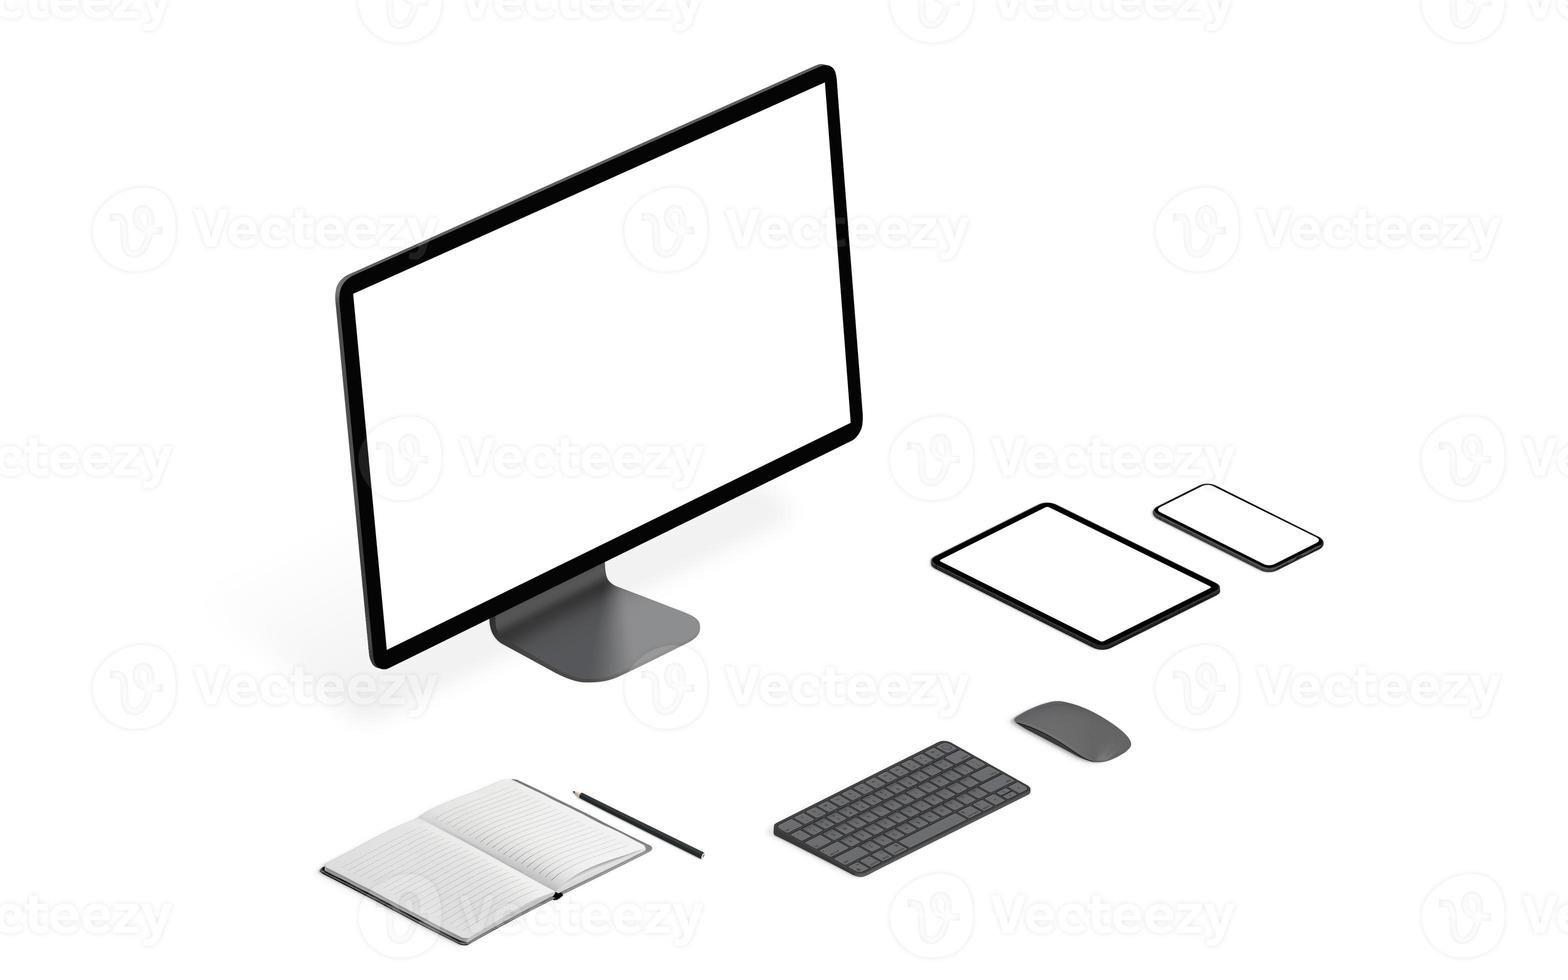 responsieve apparaten mockup op wit bureau geïsoleerd. mockups isometrisch perspectief foto